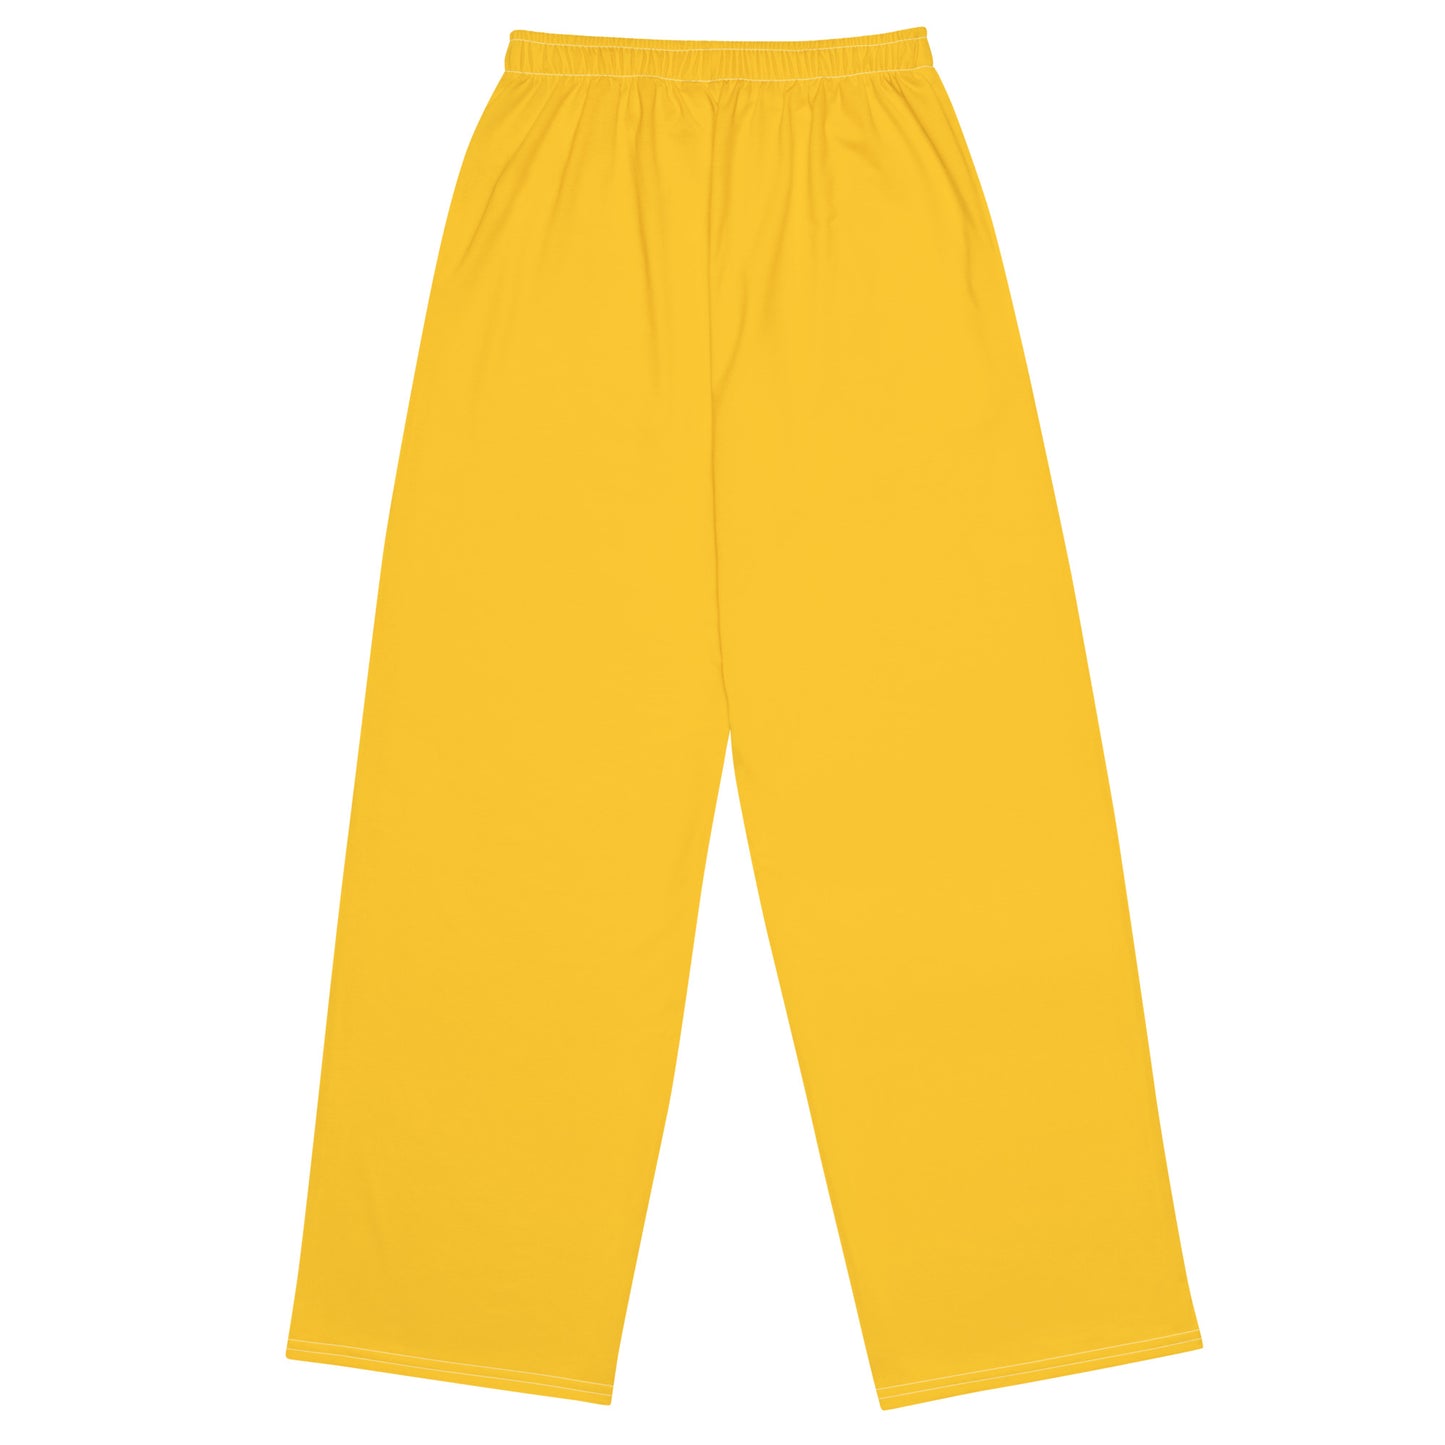 Pantalon unisexe jaune - OG Hippie Chick